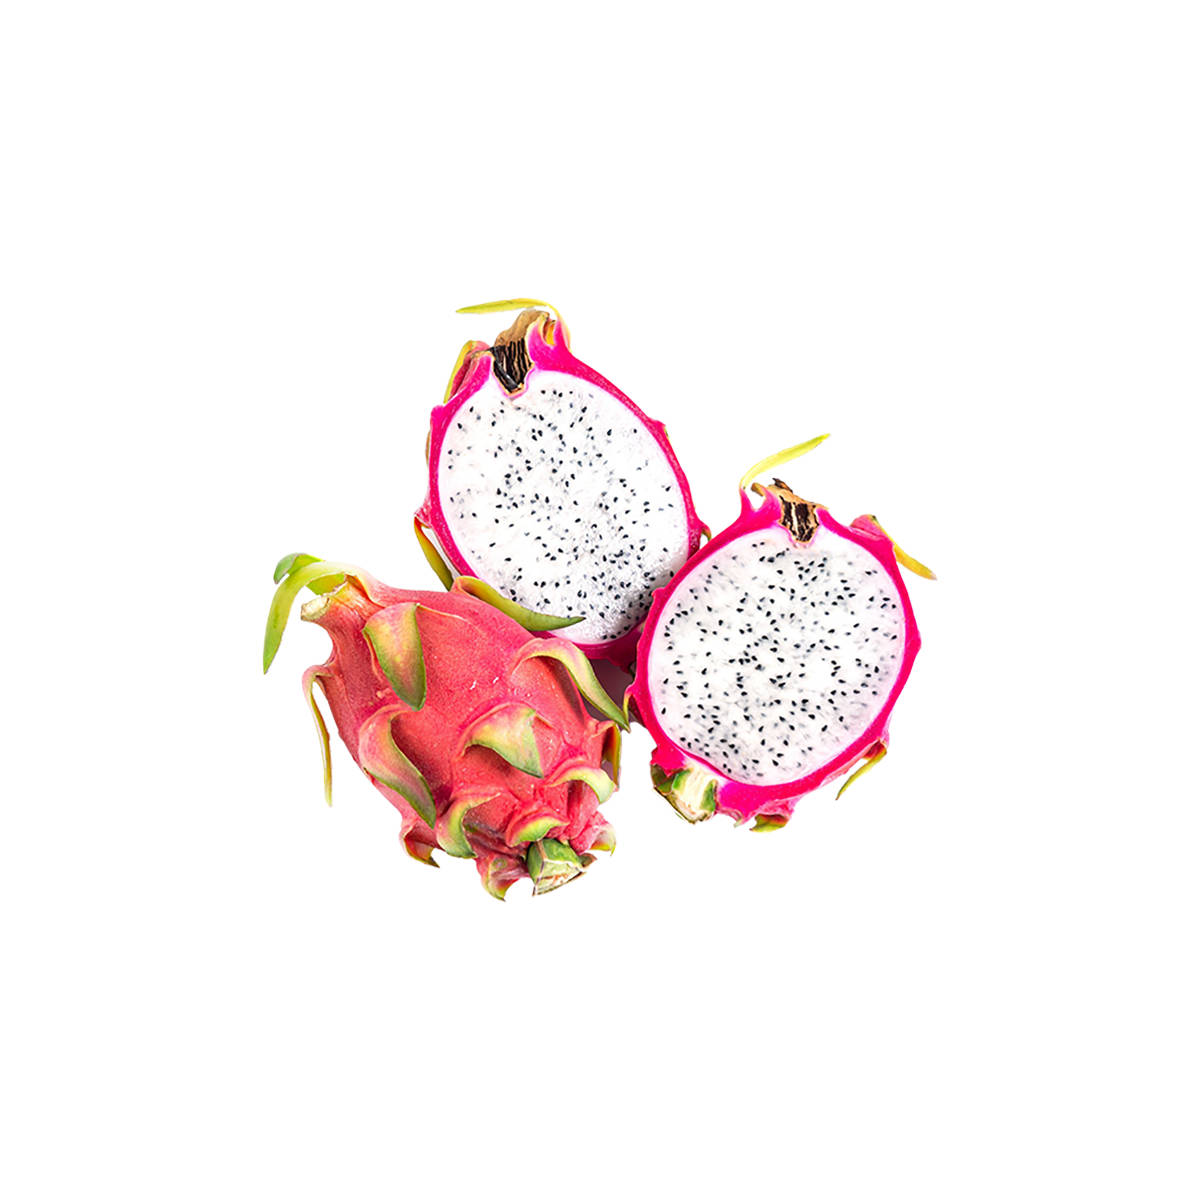 Drachenfruchthalbiert - Lebensmittelfotografie Wallpaper